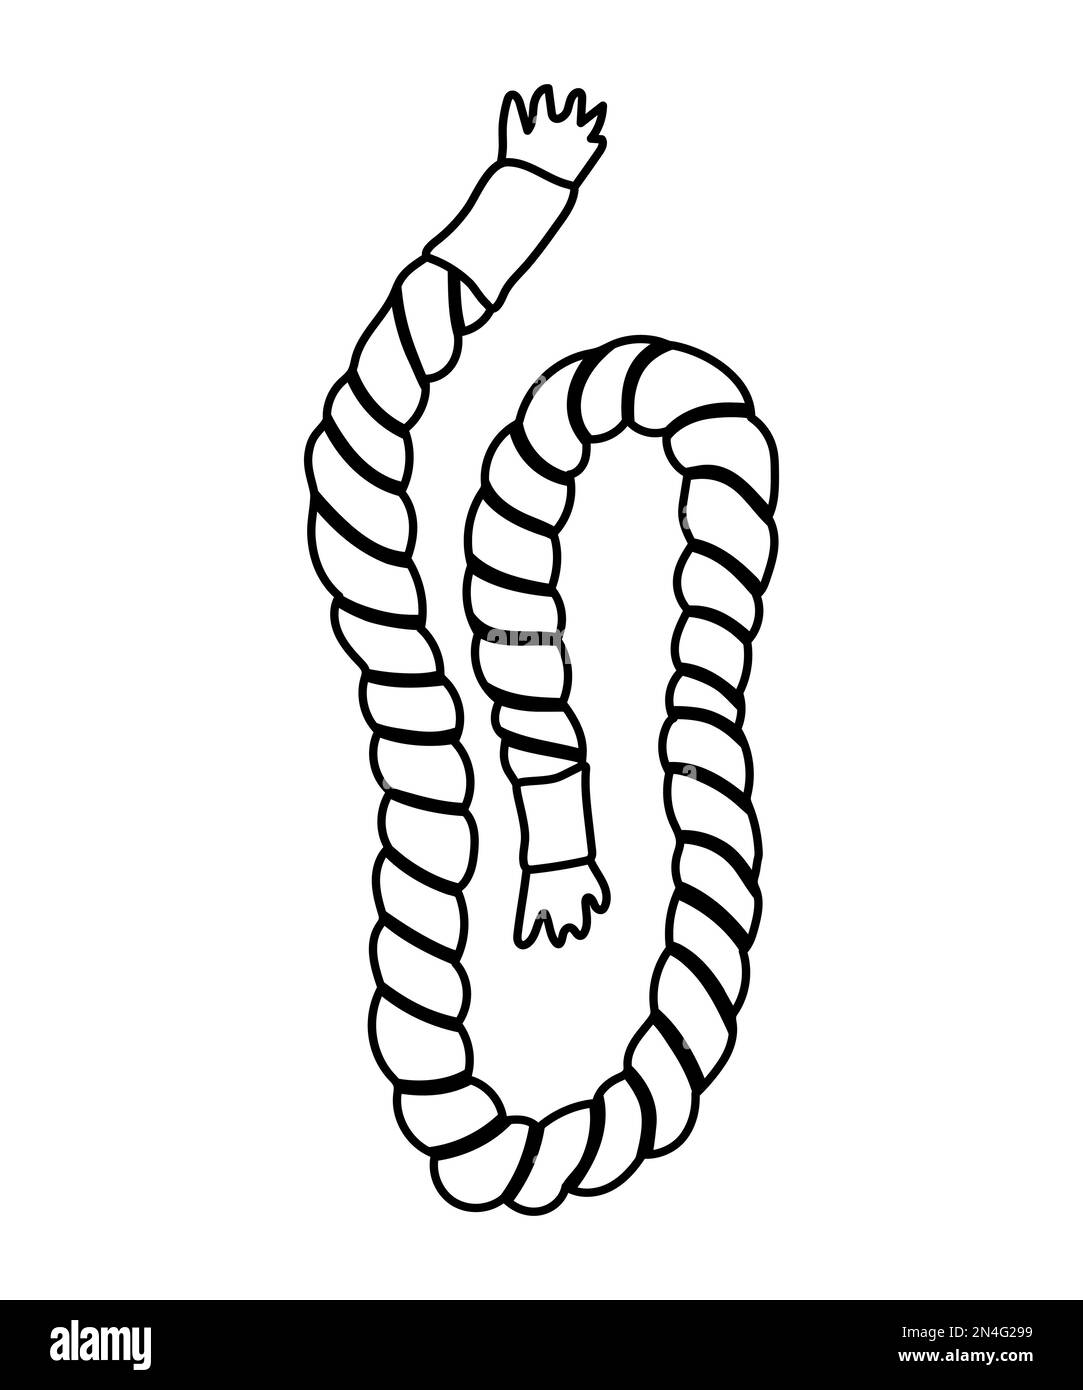 Icône de corde noire et blanche vectorielle isolée sur fond blanc. Illustration de la ligne de corde raide. Décrire l'équipement des navires nautiques. Élément de conception de cordon épais Illustration de Vecteur